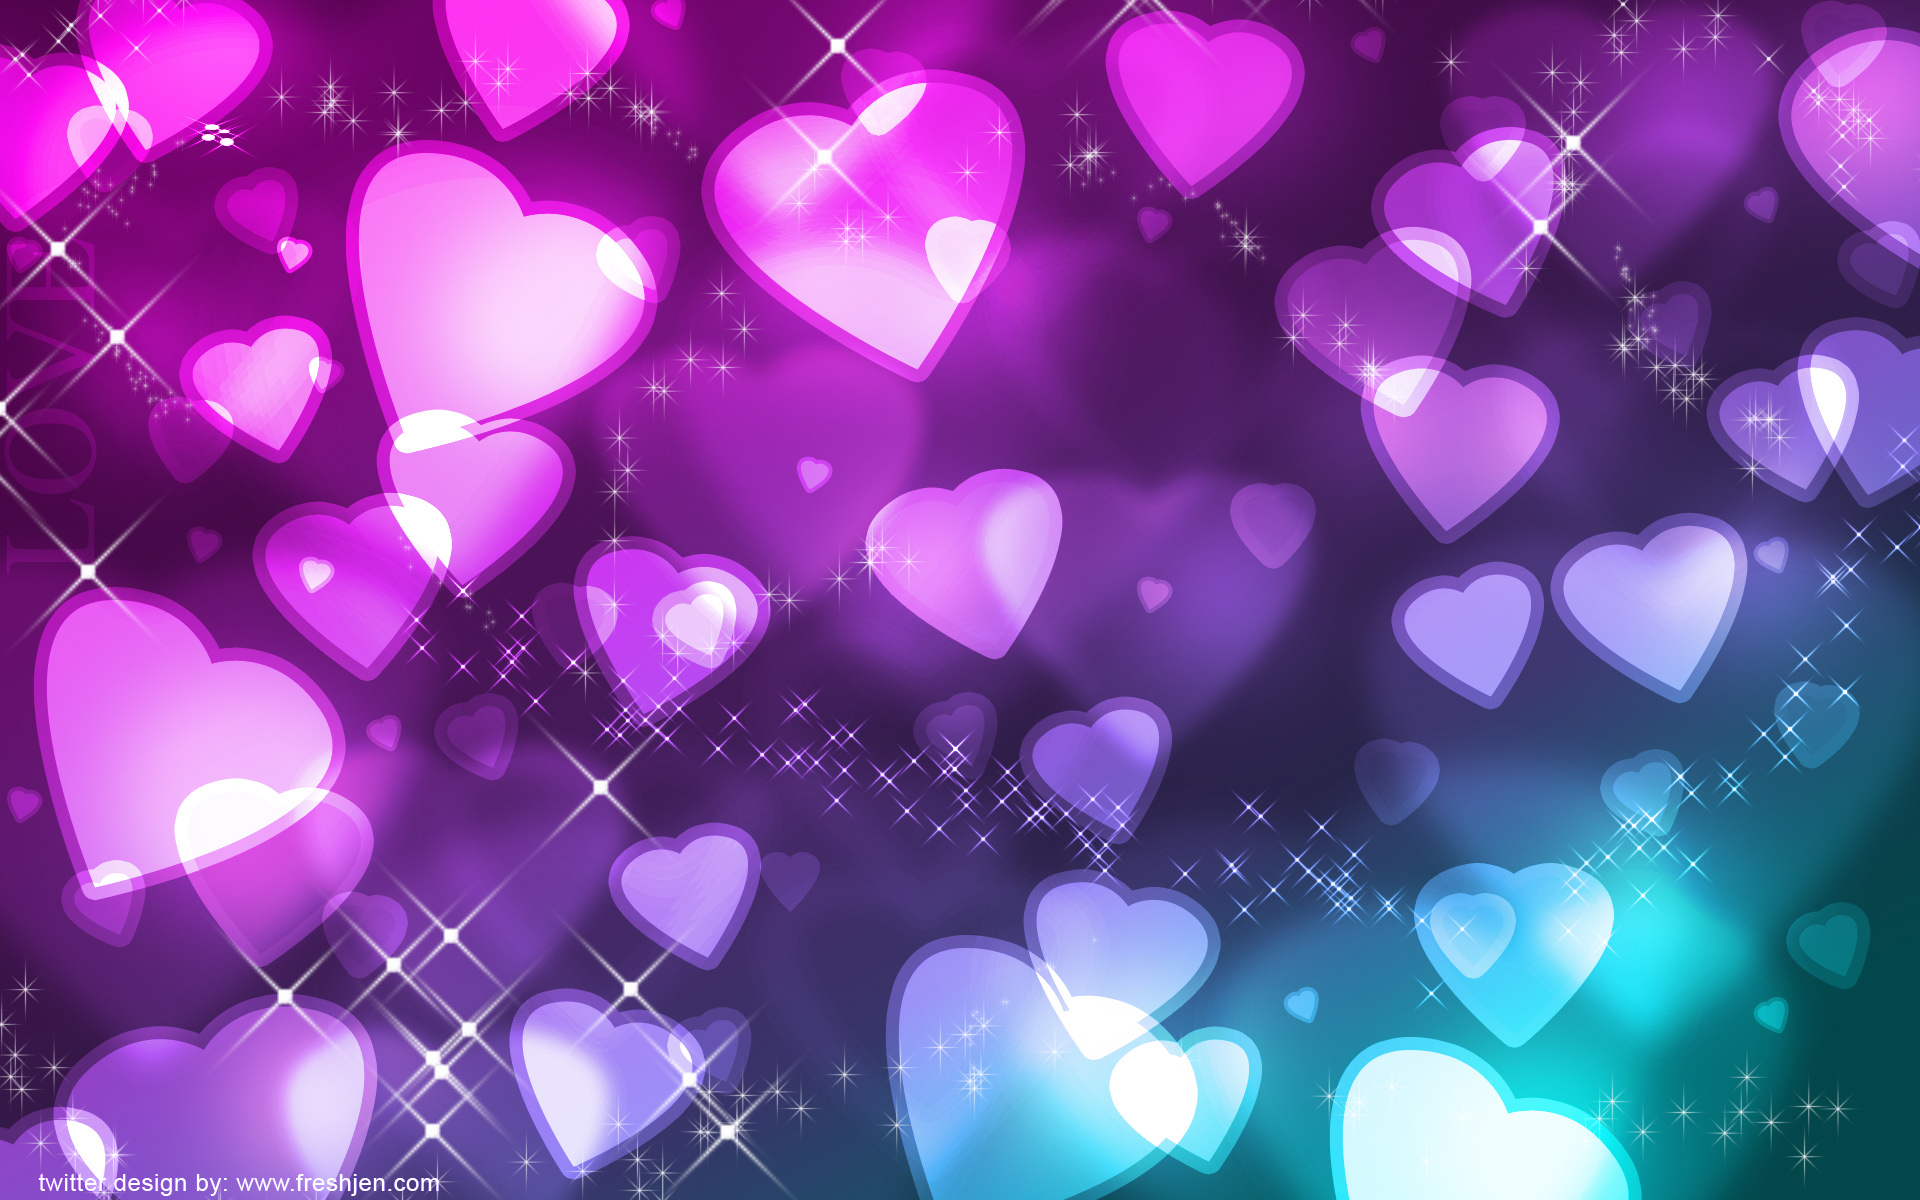 Twitter Background Backgrounds Heart Hearts Freshjen wallpapers HD